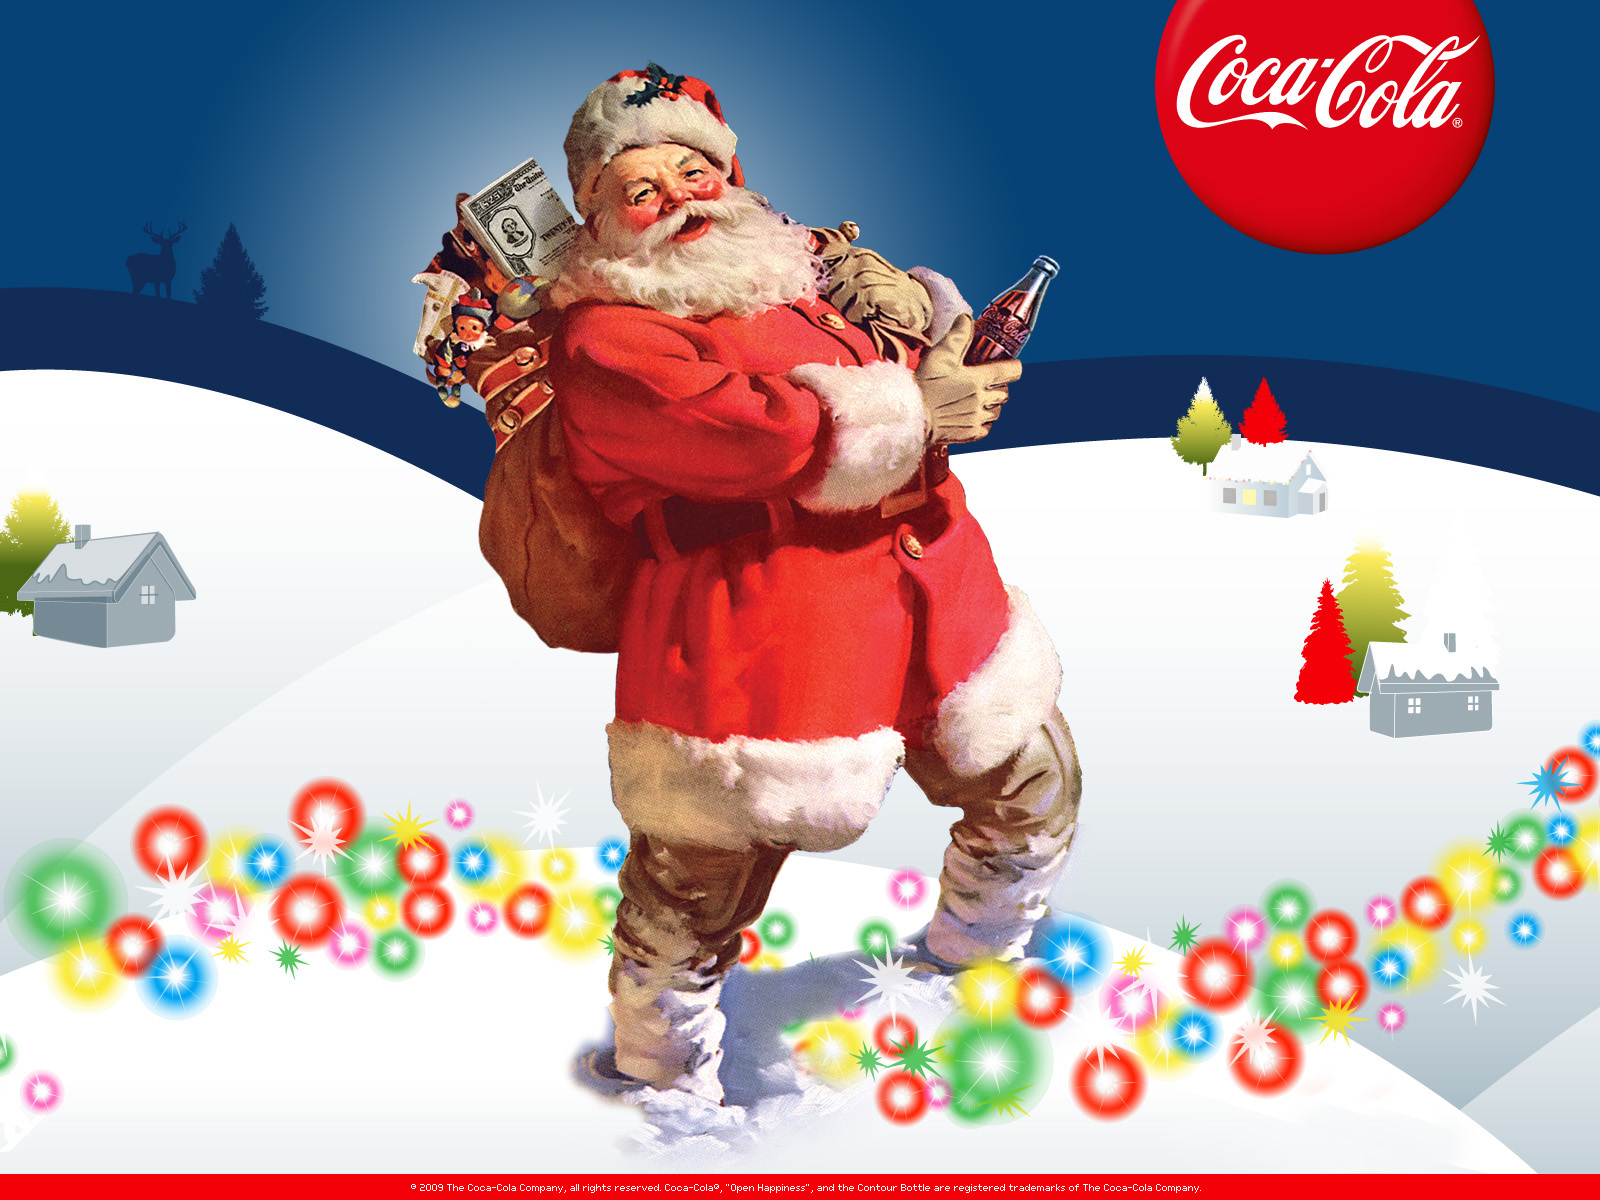 Free Download Coke Christmas Wallpaper